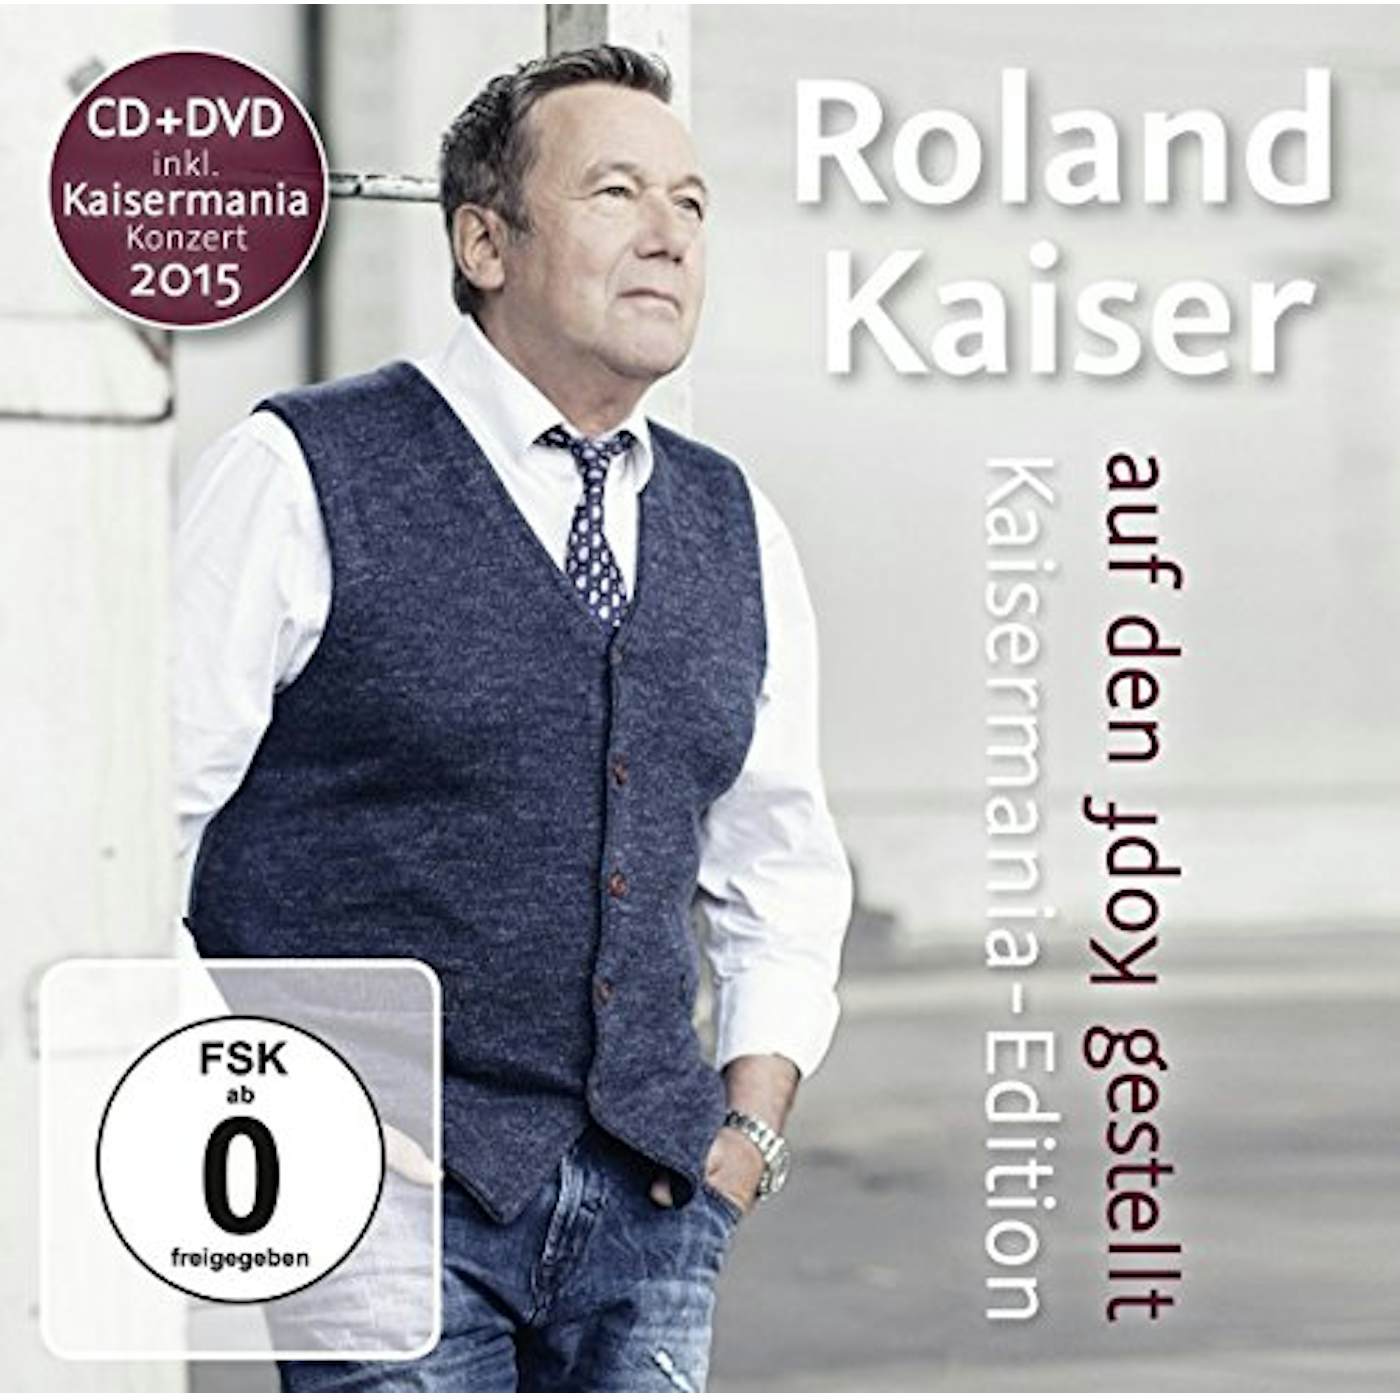 Roland Kaiser AUF DEN KOPF GESTELLT: DIE KAISERMANIA CD